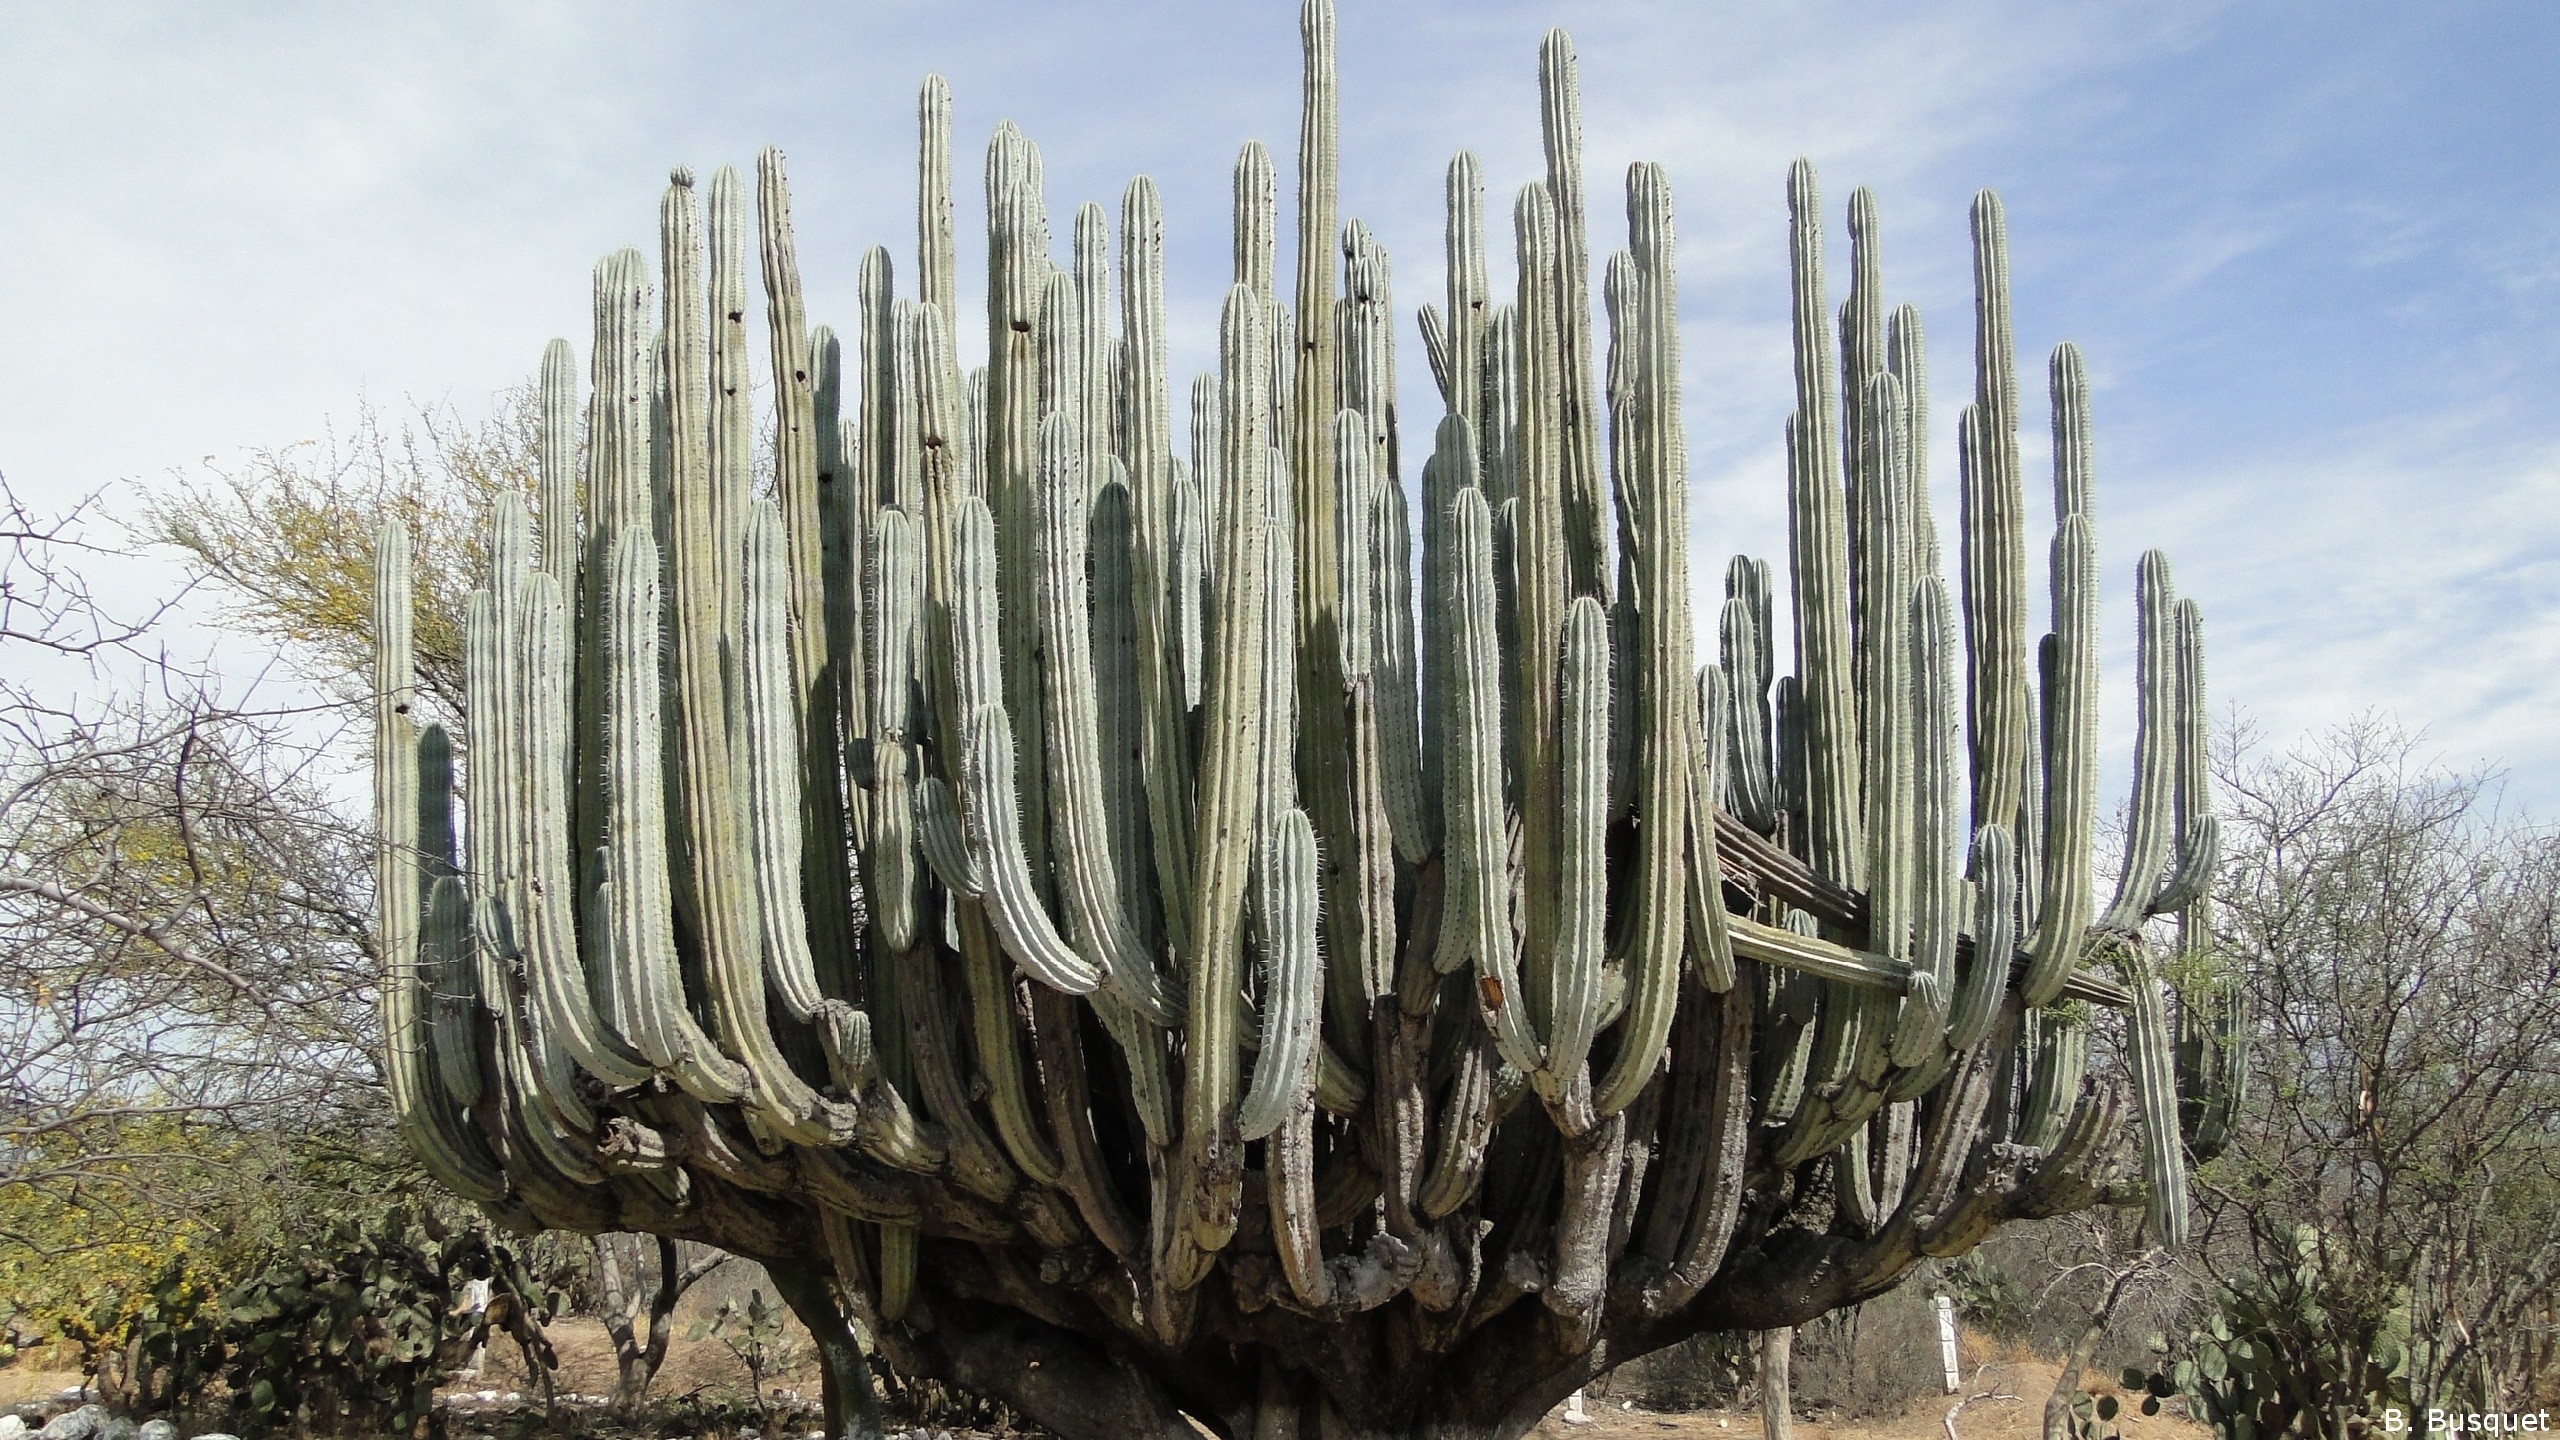 Huge cactus in the desert's HD Wallpaper